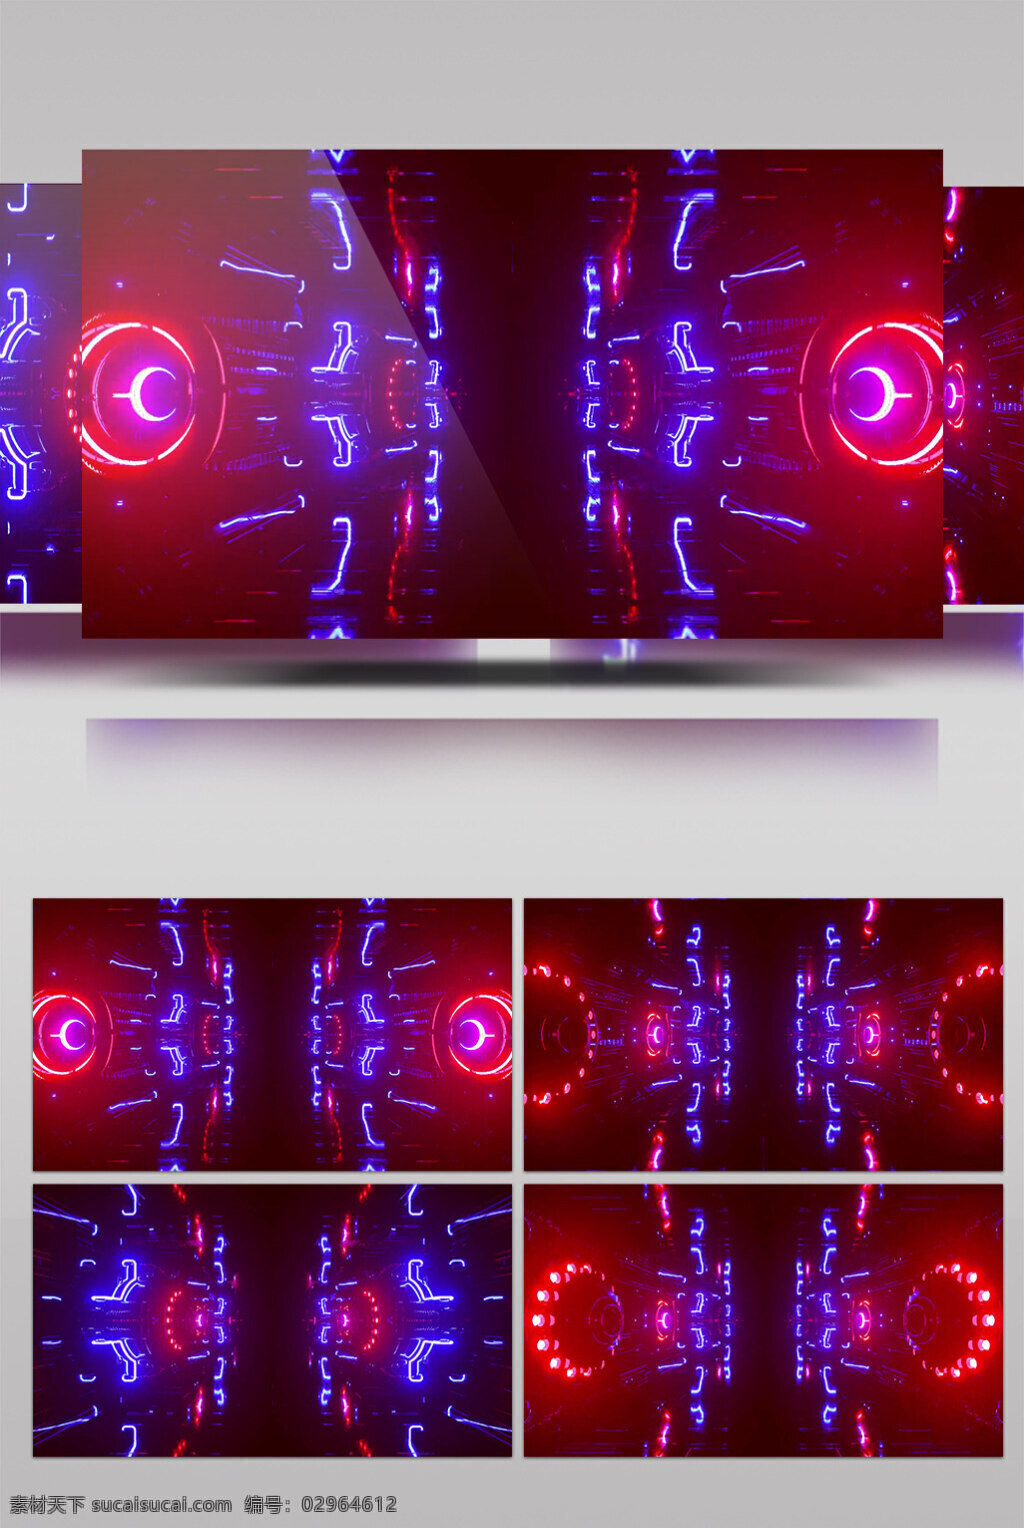 炫 酷 灯光 节 动态 视频 灯光节目 动态灯光 华丽流转 光芒四射 3d视频素材 特效视频素材